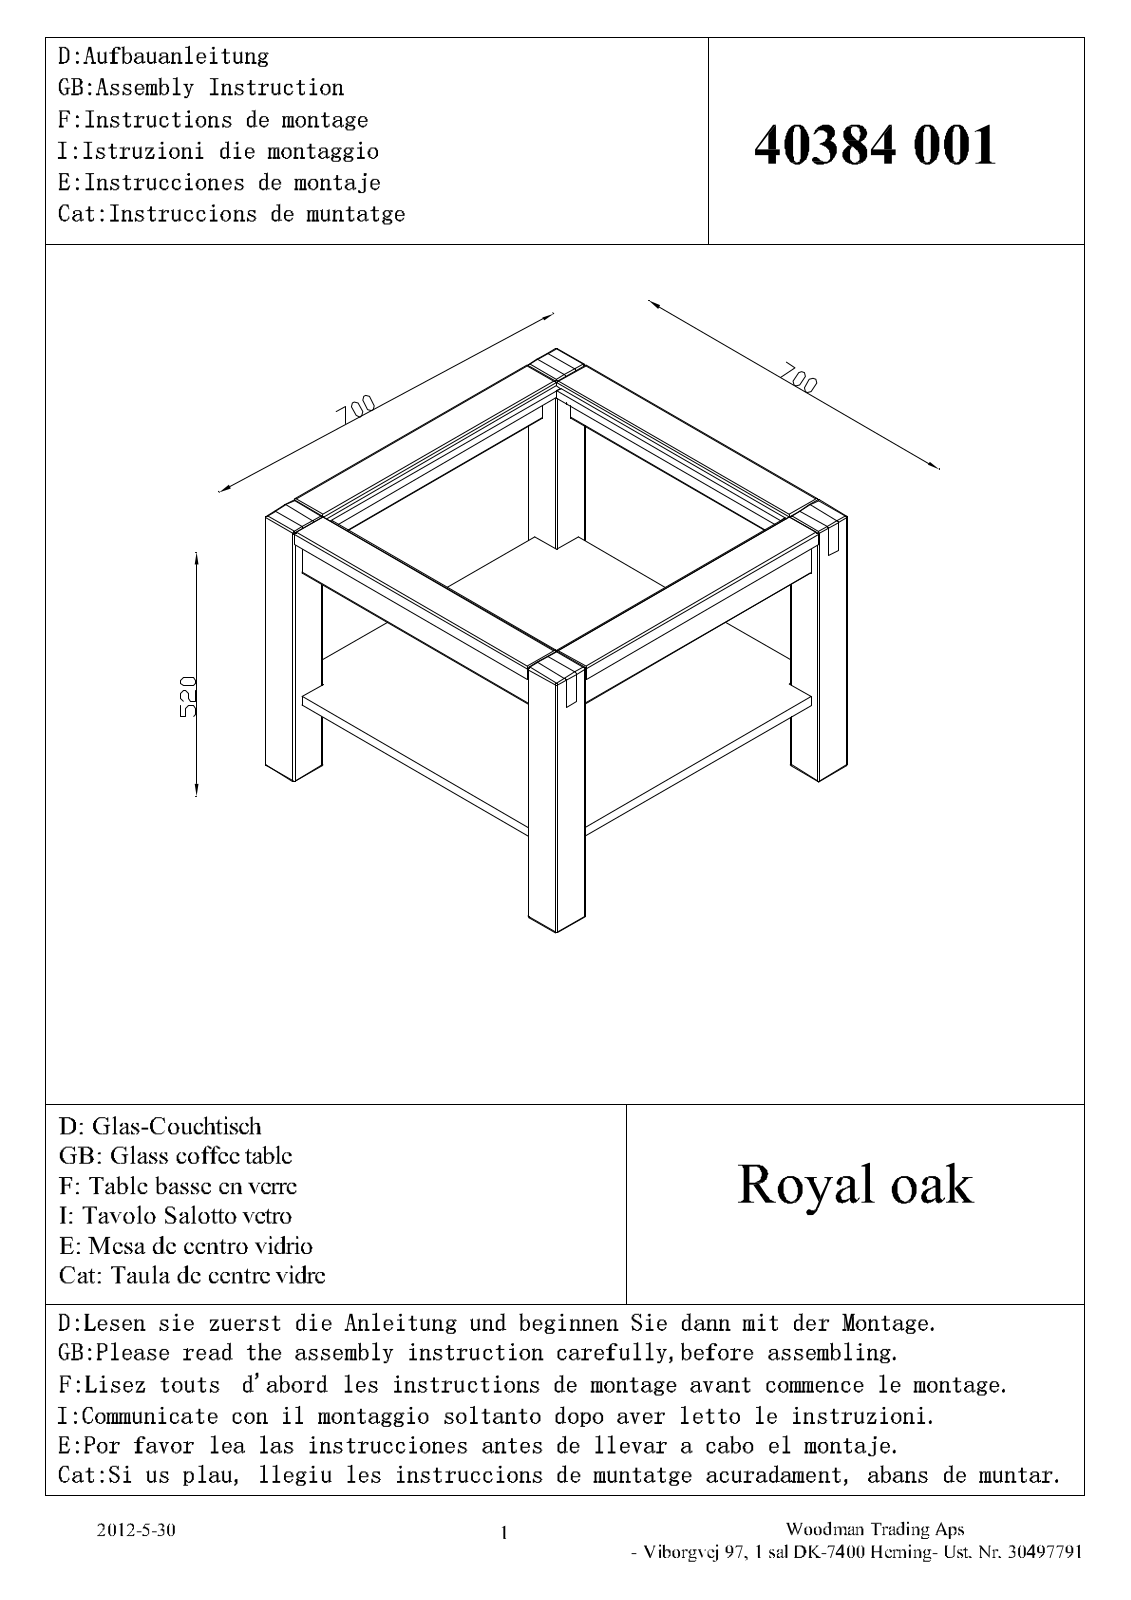 JYSK Svaneke User Manual